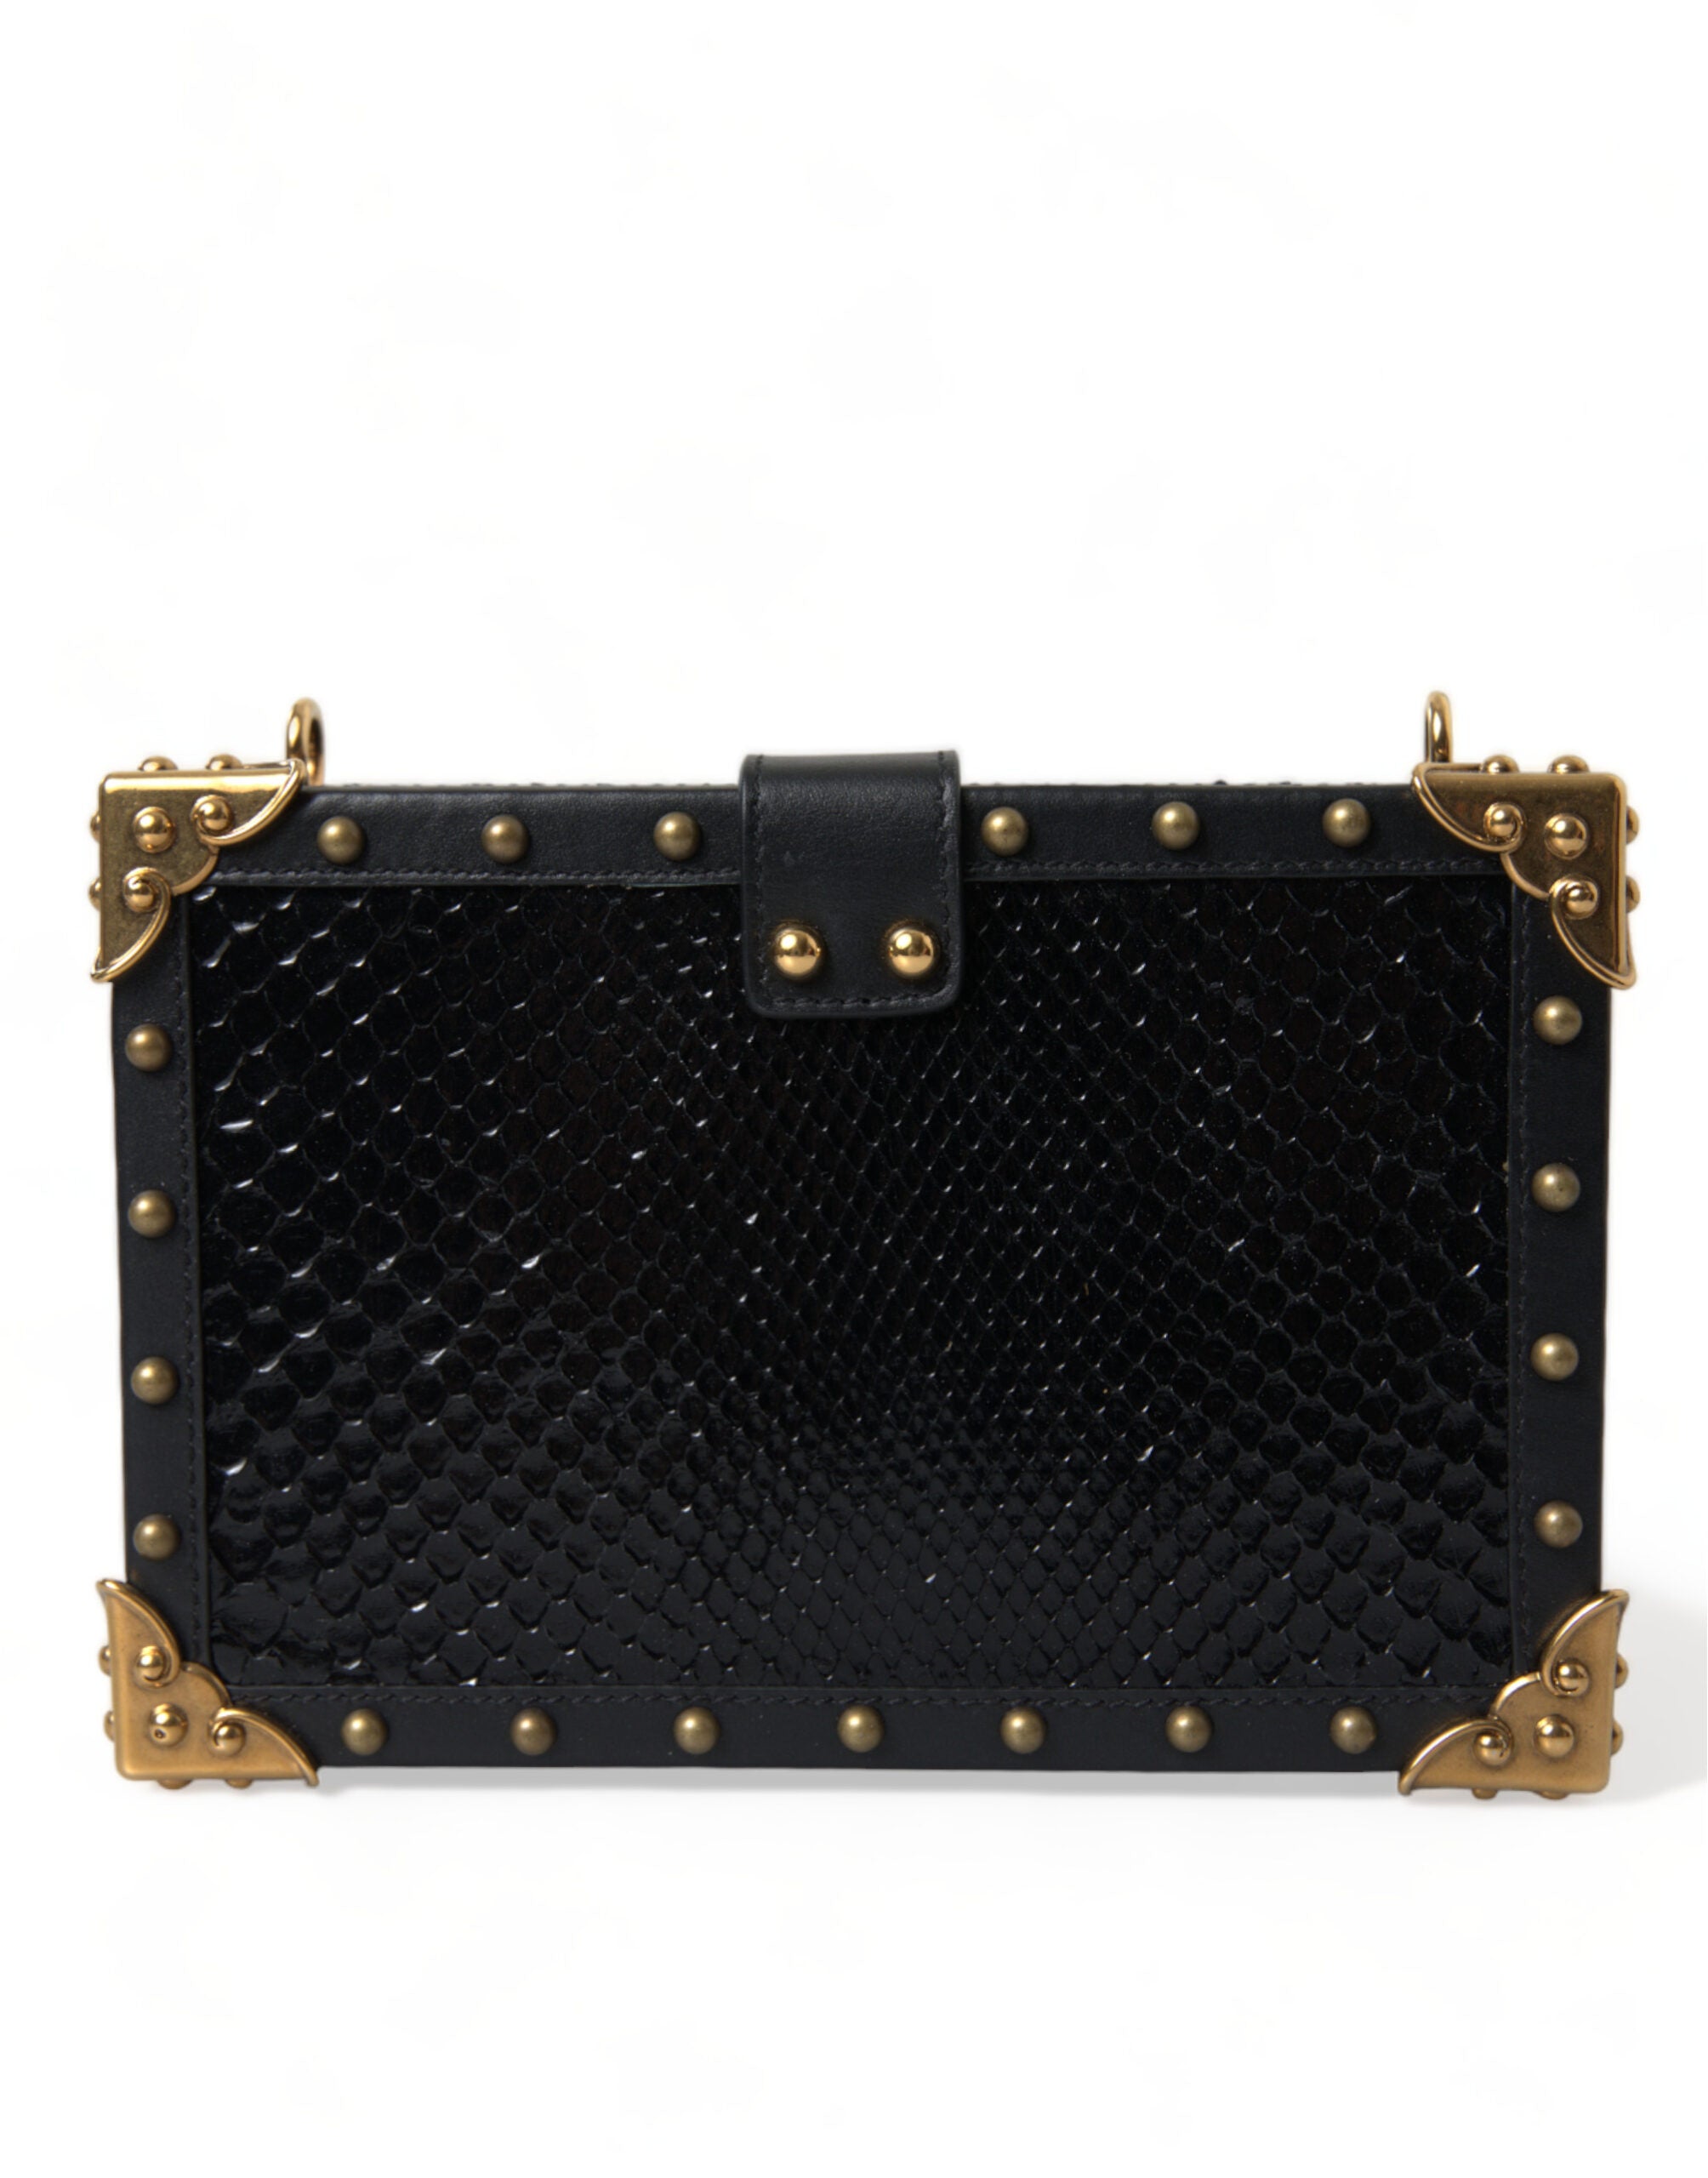 Dolce & Gabbana Black Snakeskin Leather Gold HEART Studs Box Shoulder Clutch Bag